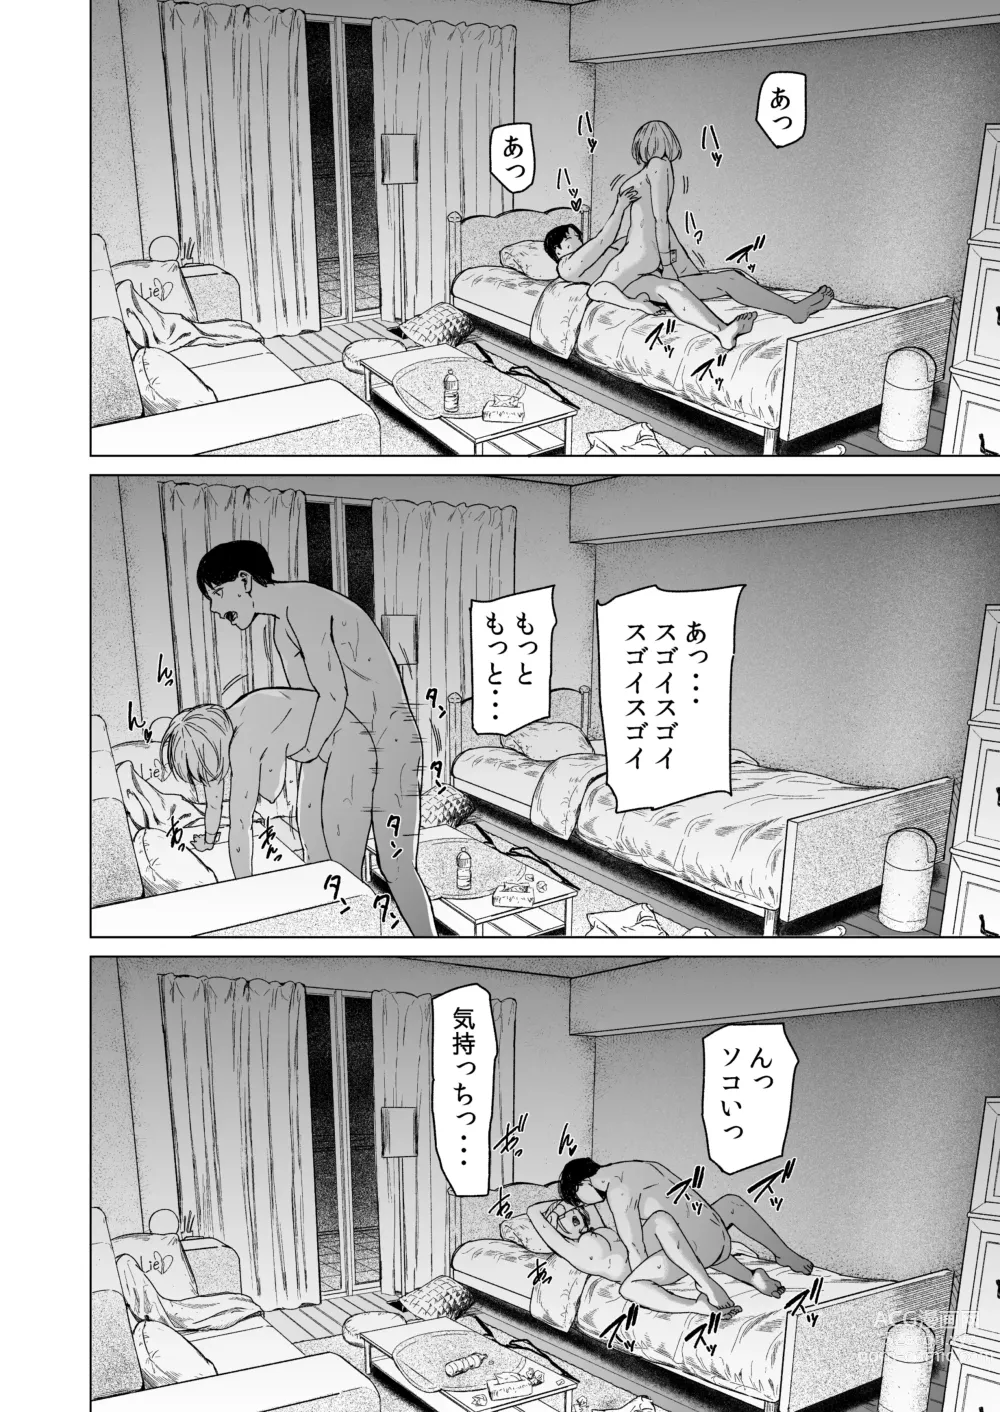 Page 73 of doujinshi Furachi